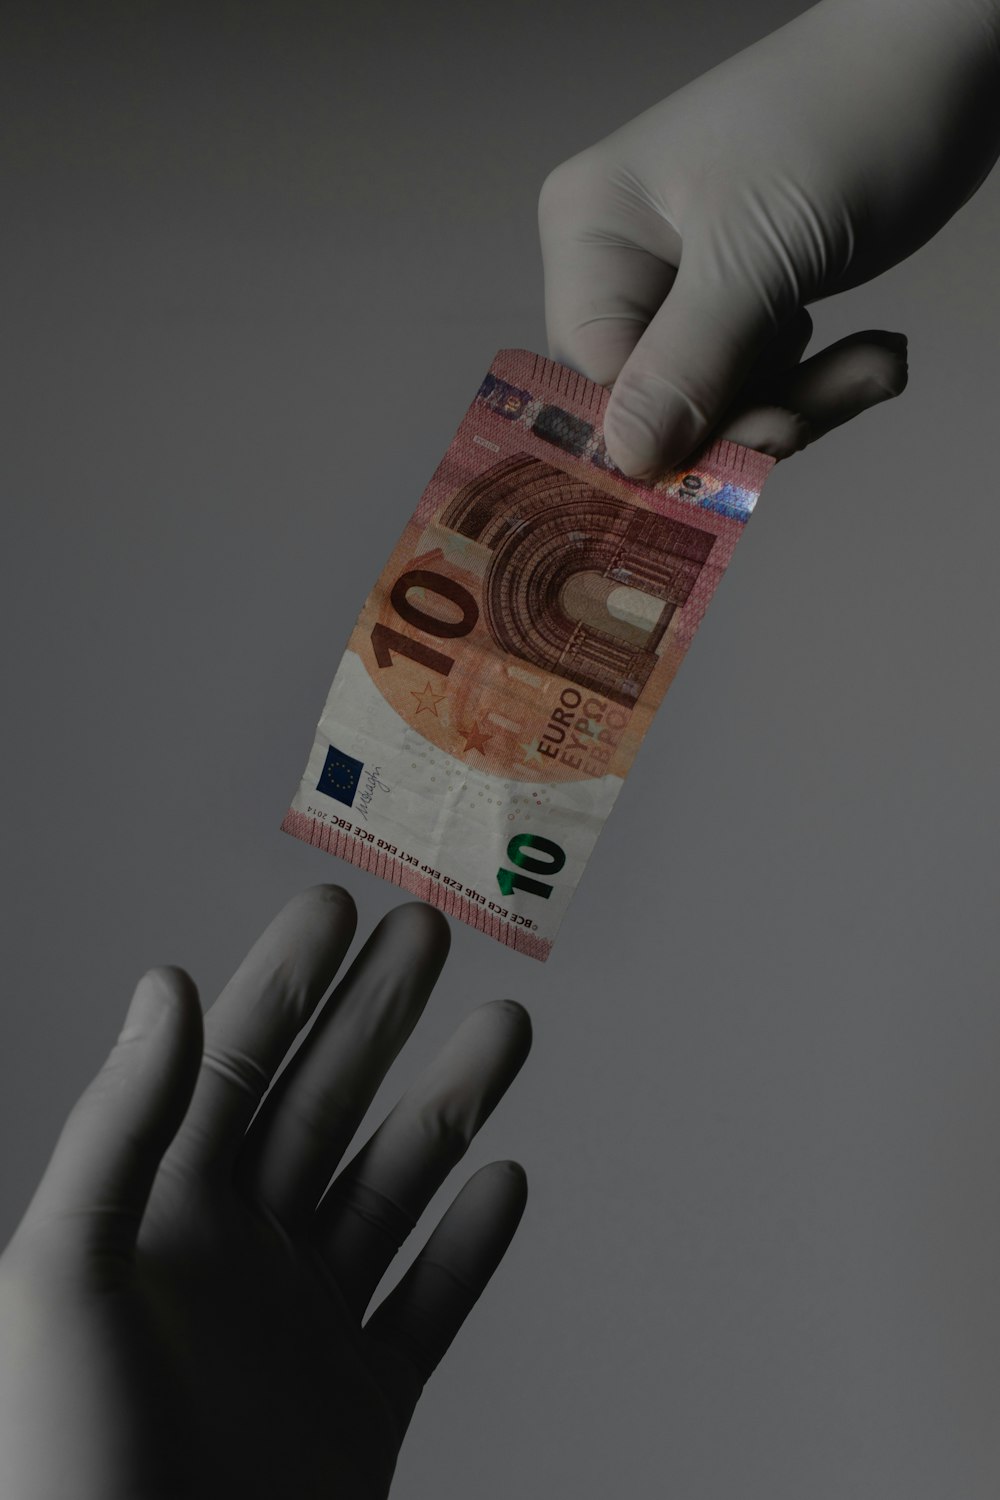 10-Euro-Schein auf Personenhand